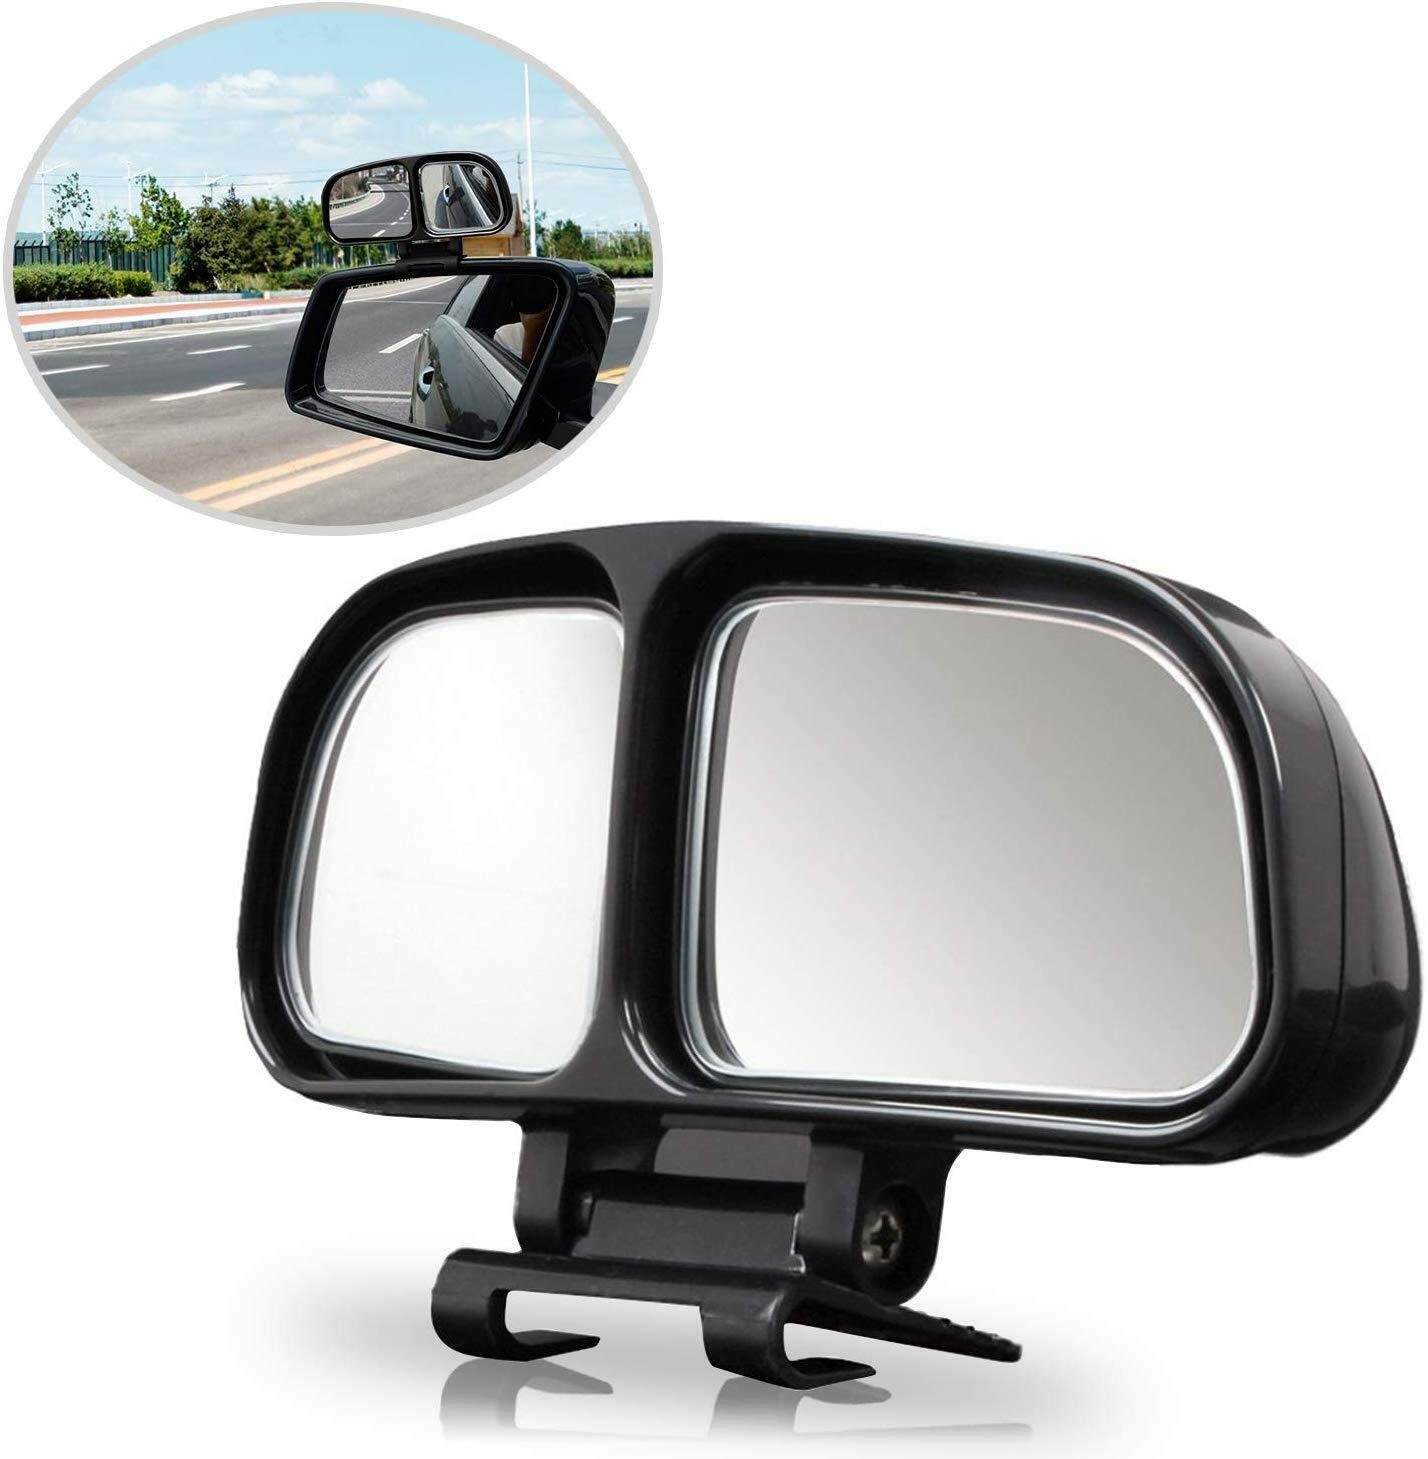 CarStyling Spiegelaufsatz 3D Weitwinkel toter Winkel Spiegel Aufsatz Doppelspiegel Zusatzspiegel